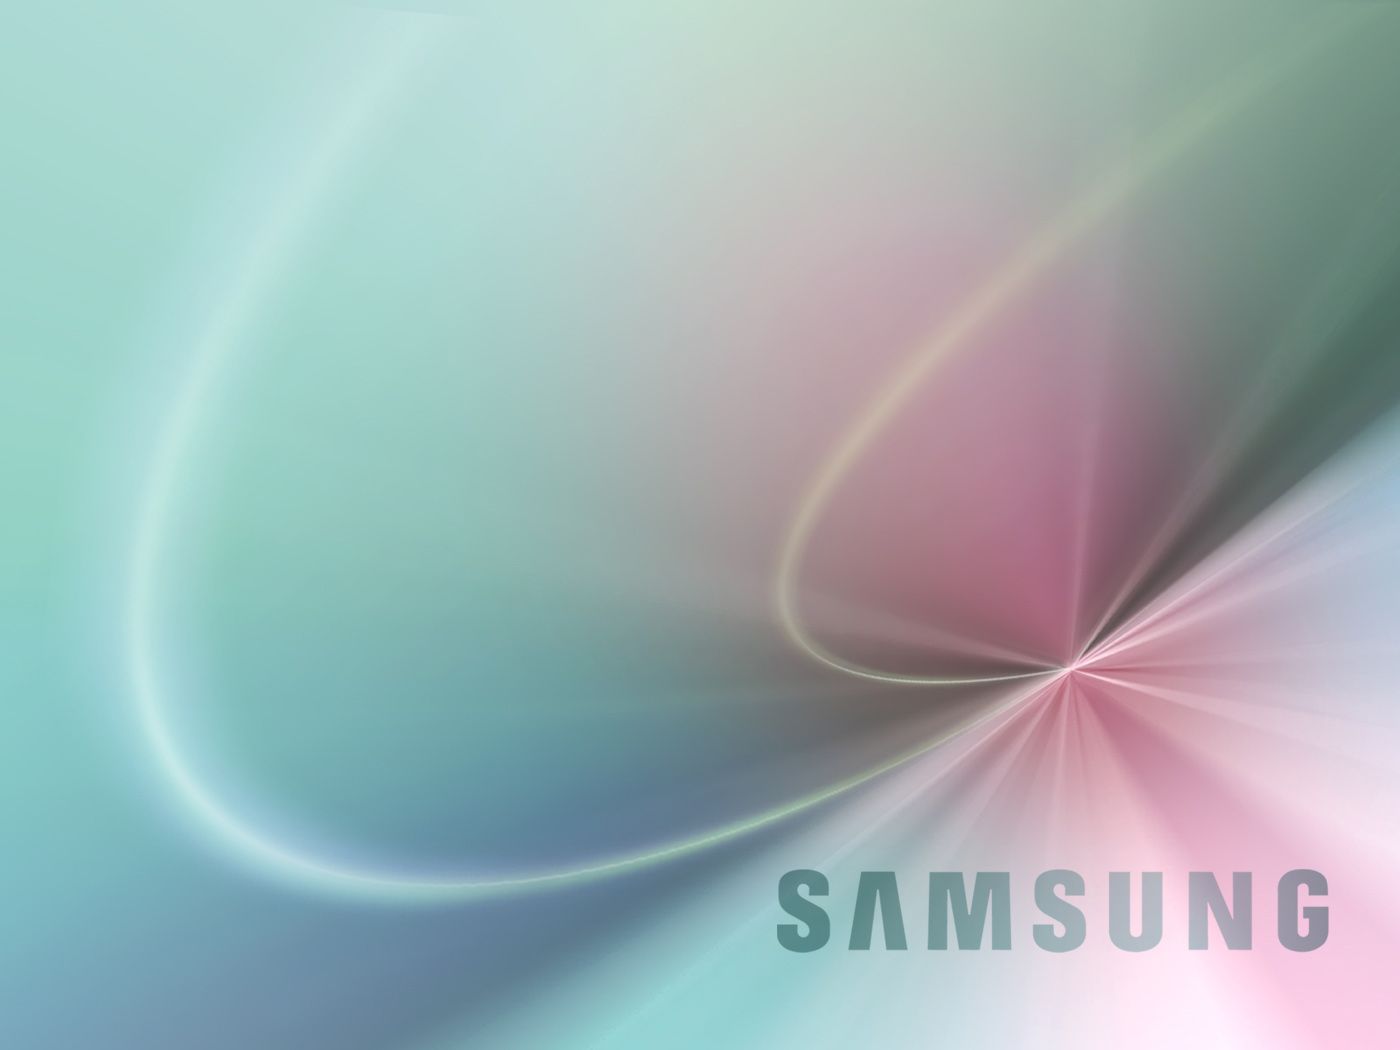 Samsung Laptop Wallpaper HD